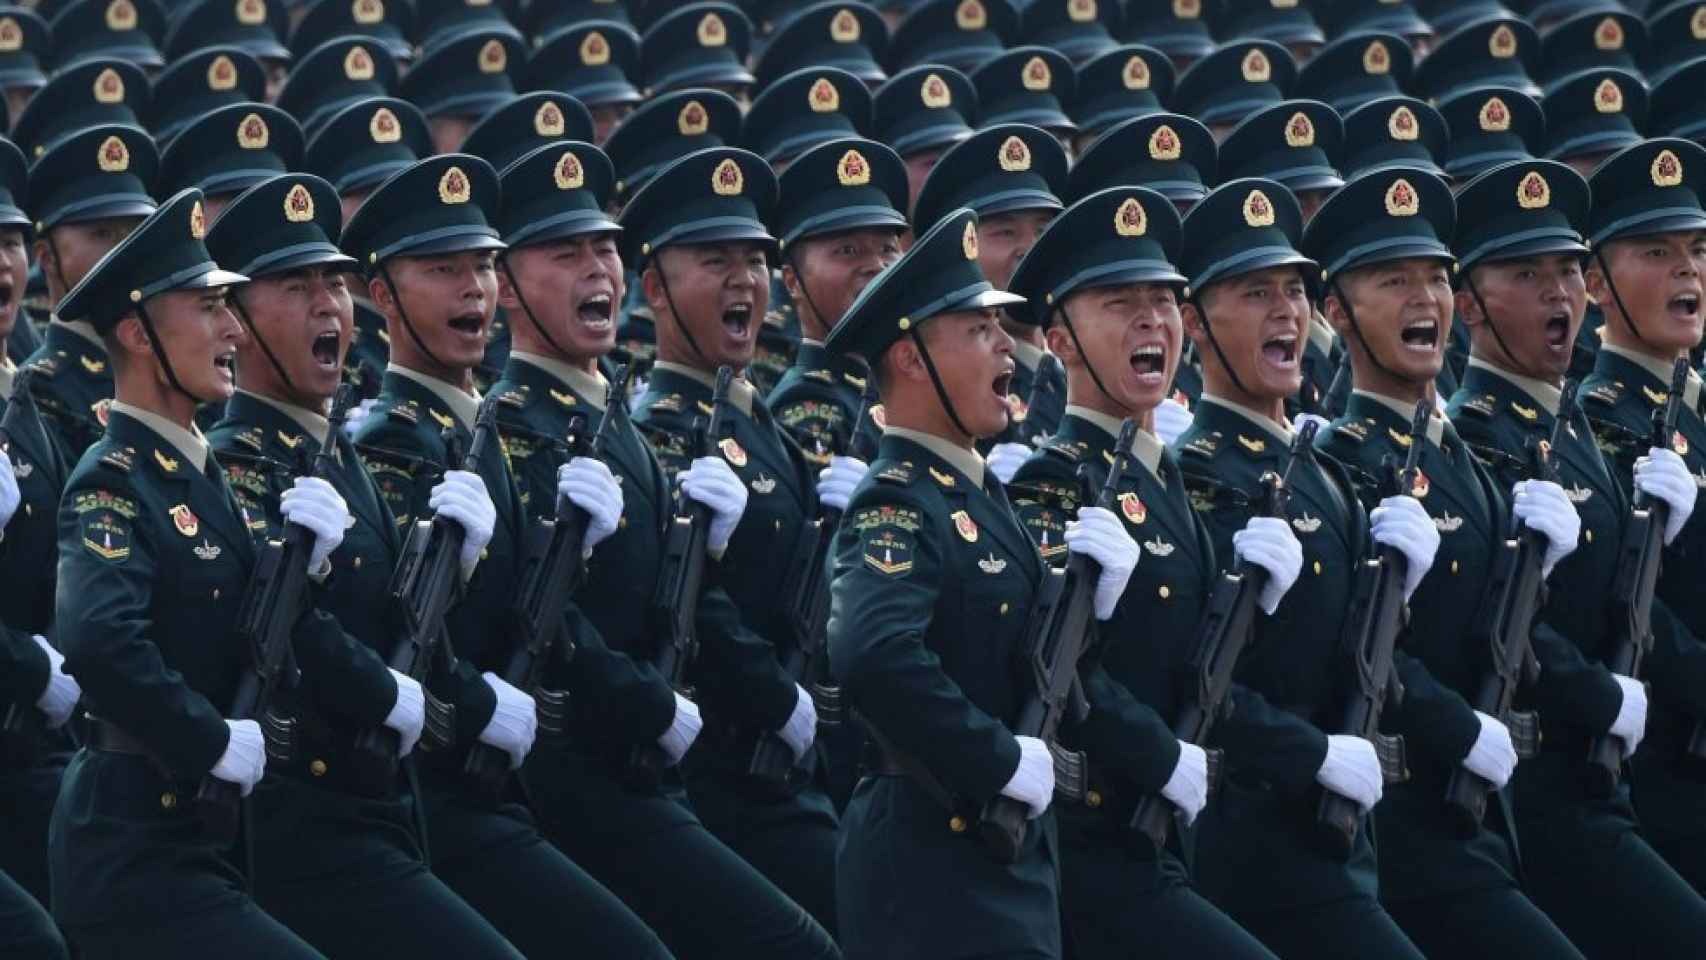 eeuu alerta: el ejército de china es más agresivo y peligroso y podría invadir taiwán en 2027